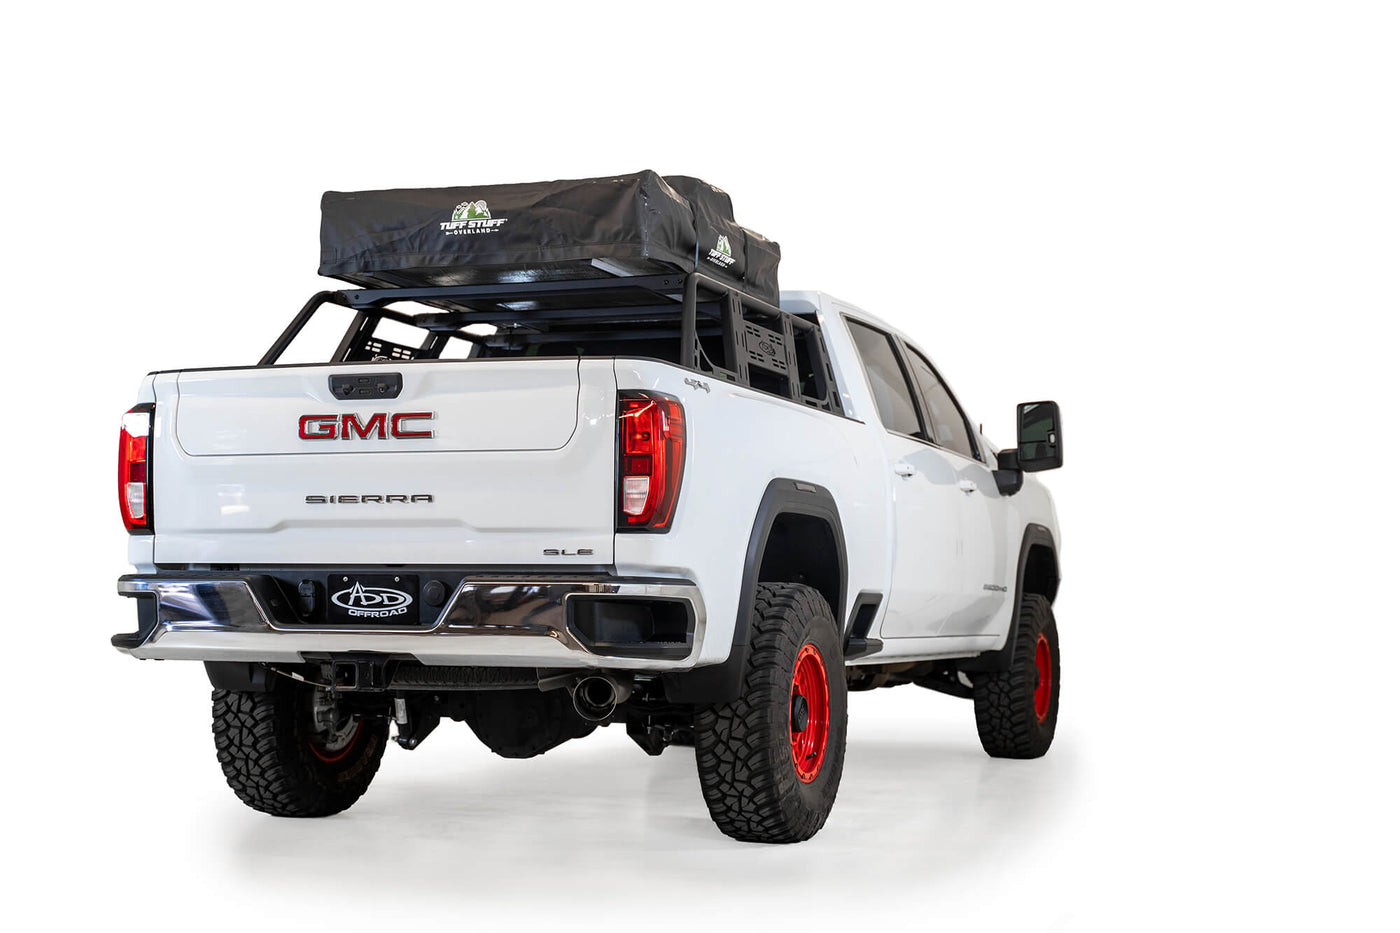 Universal bed rack for full-sized trucks 